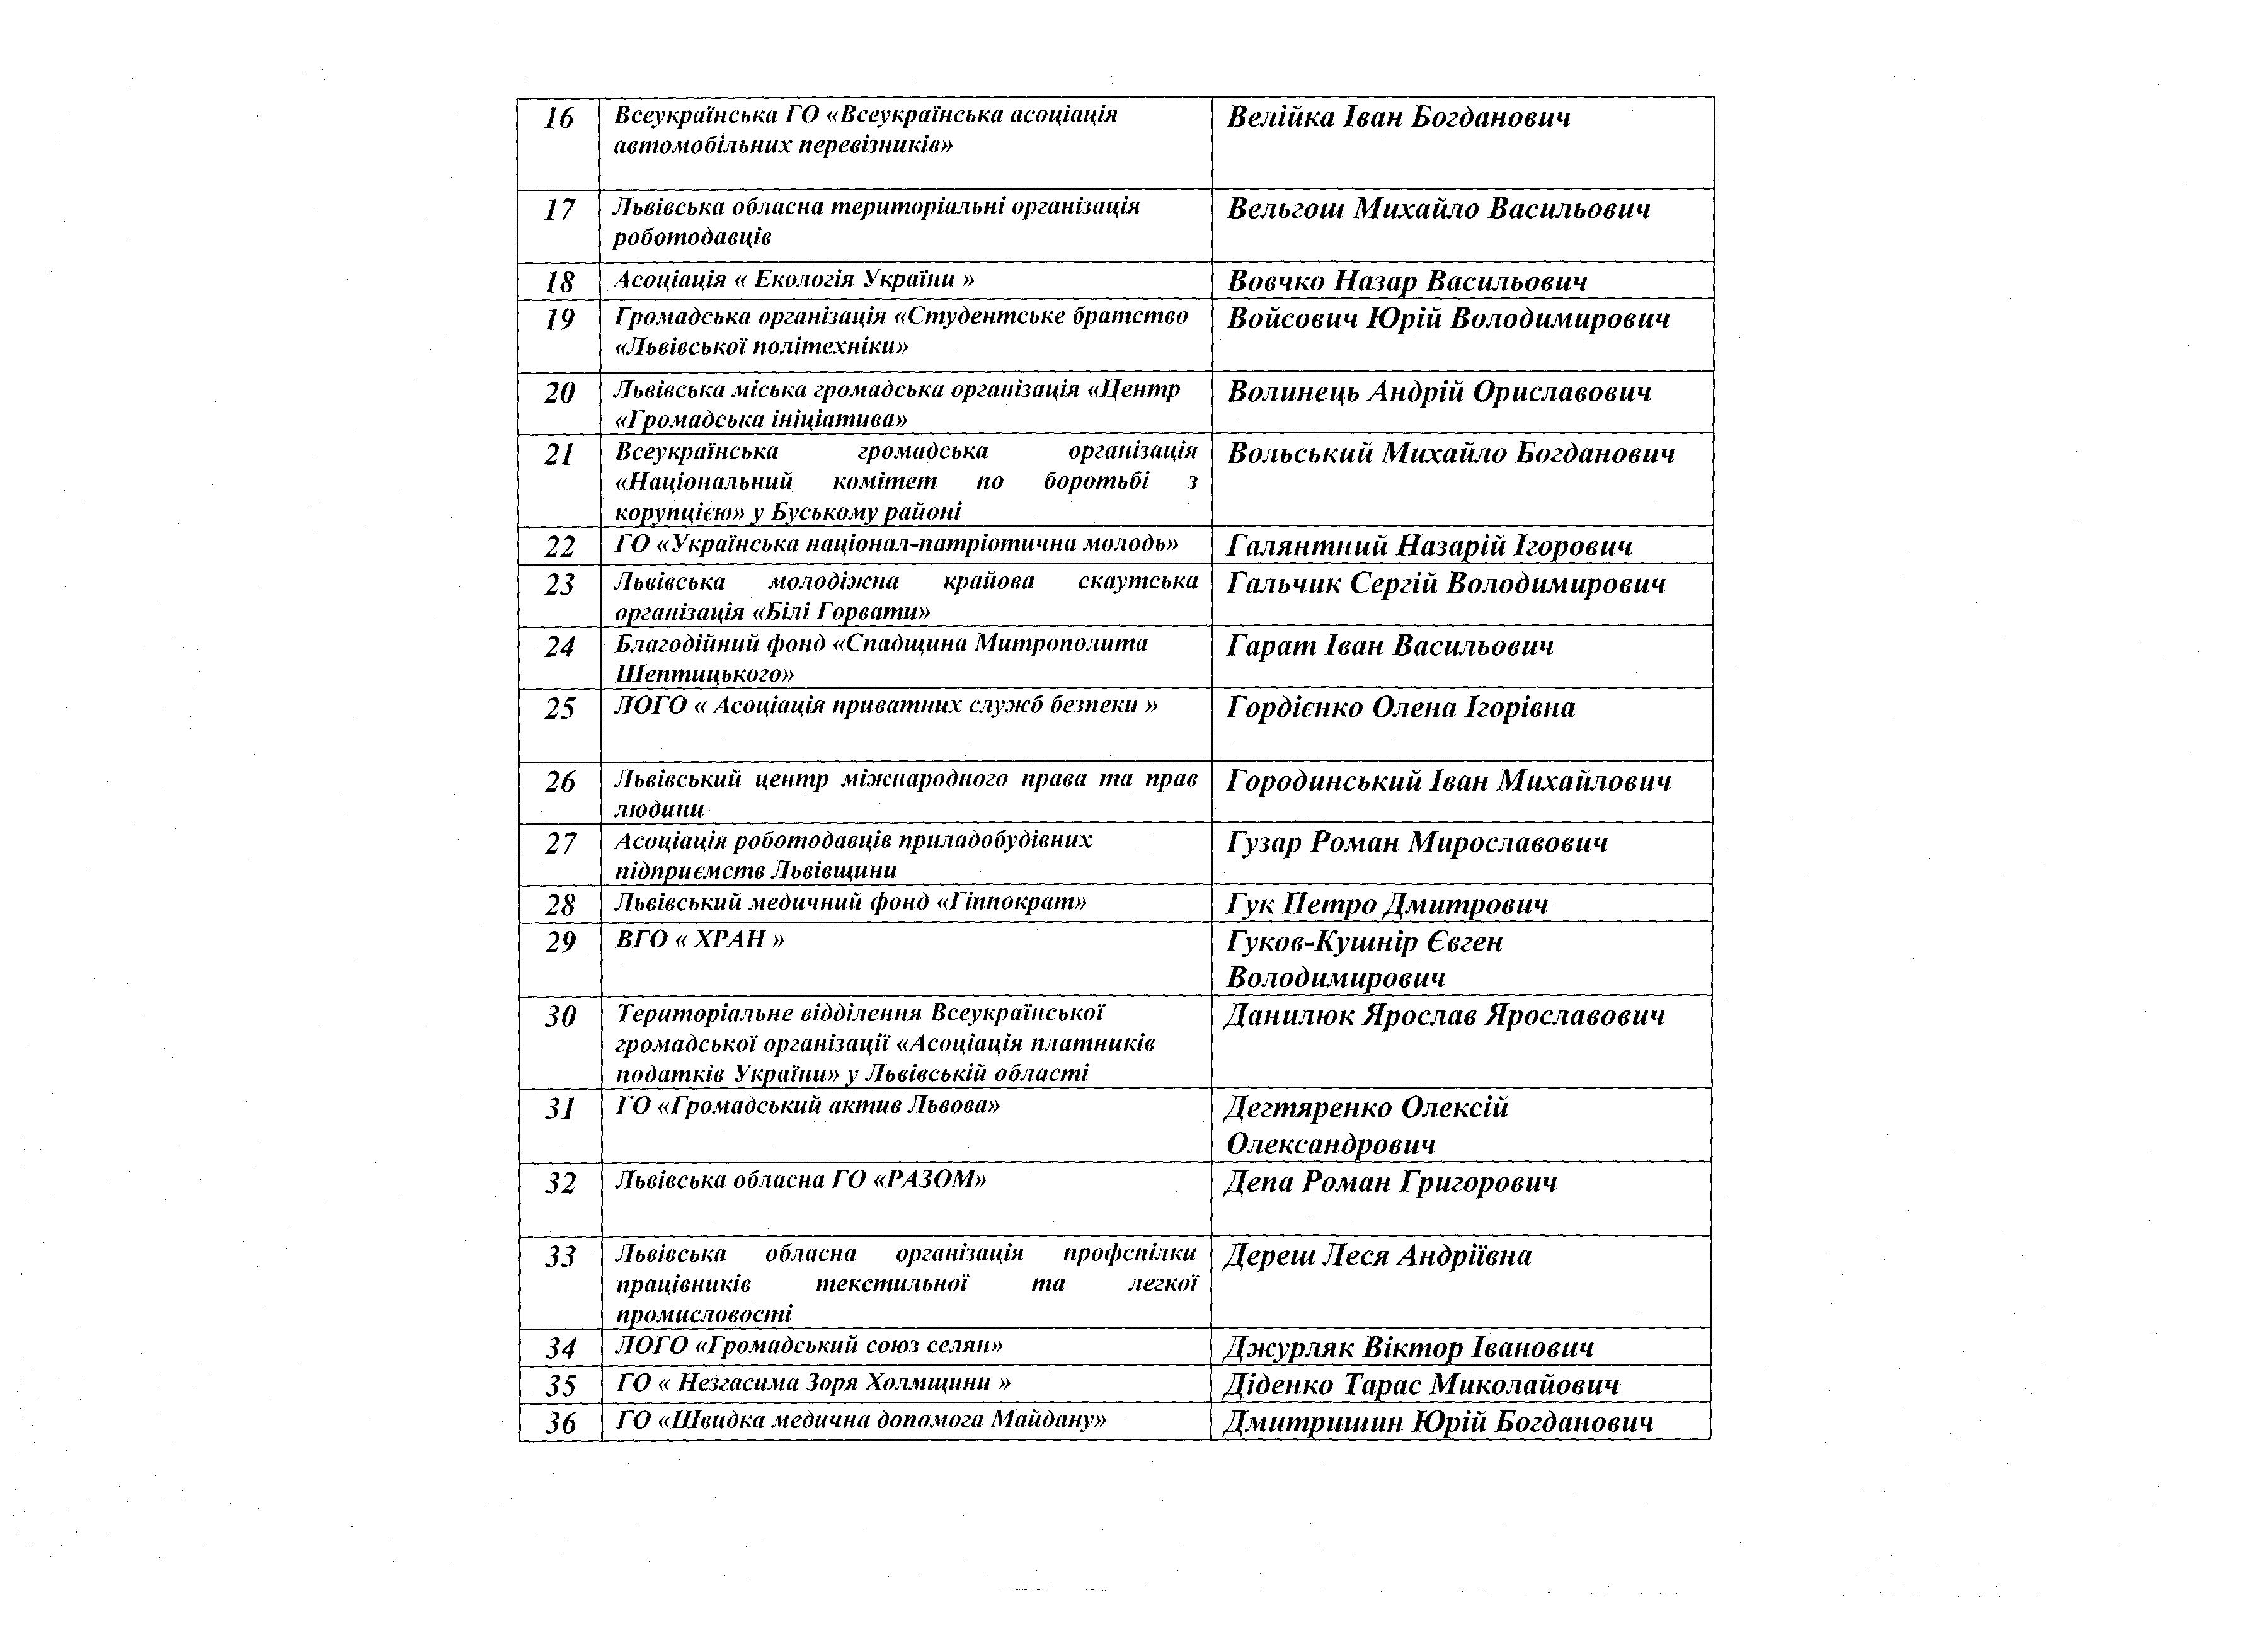 Список учасників Консультаційної ради